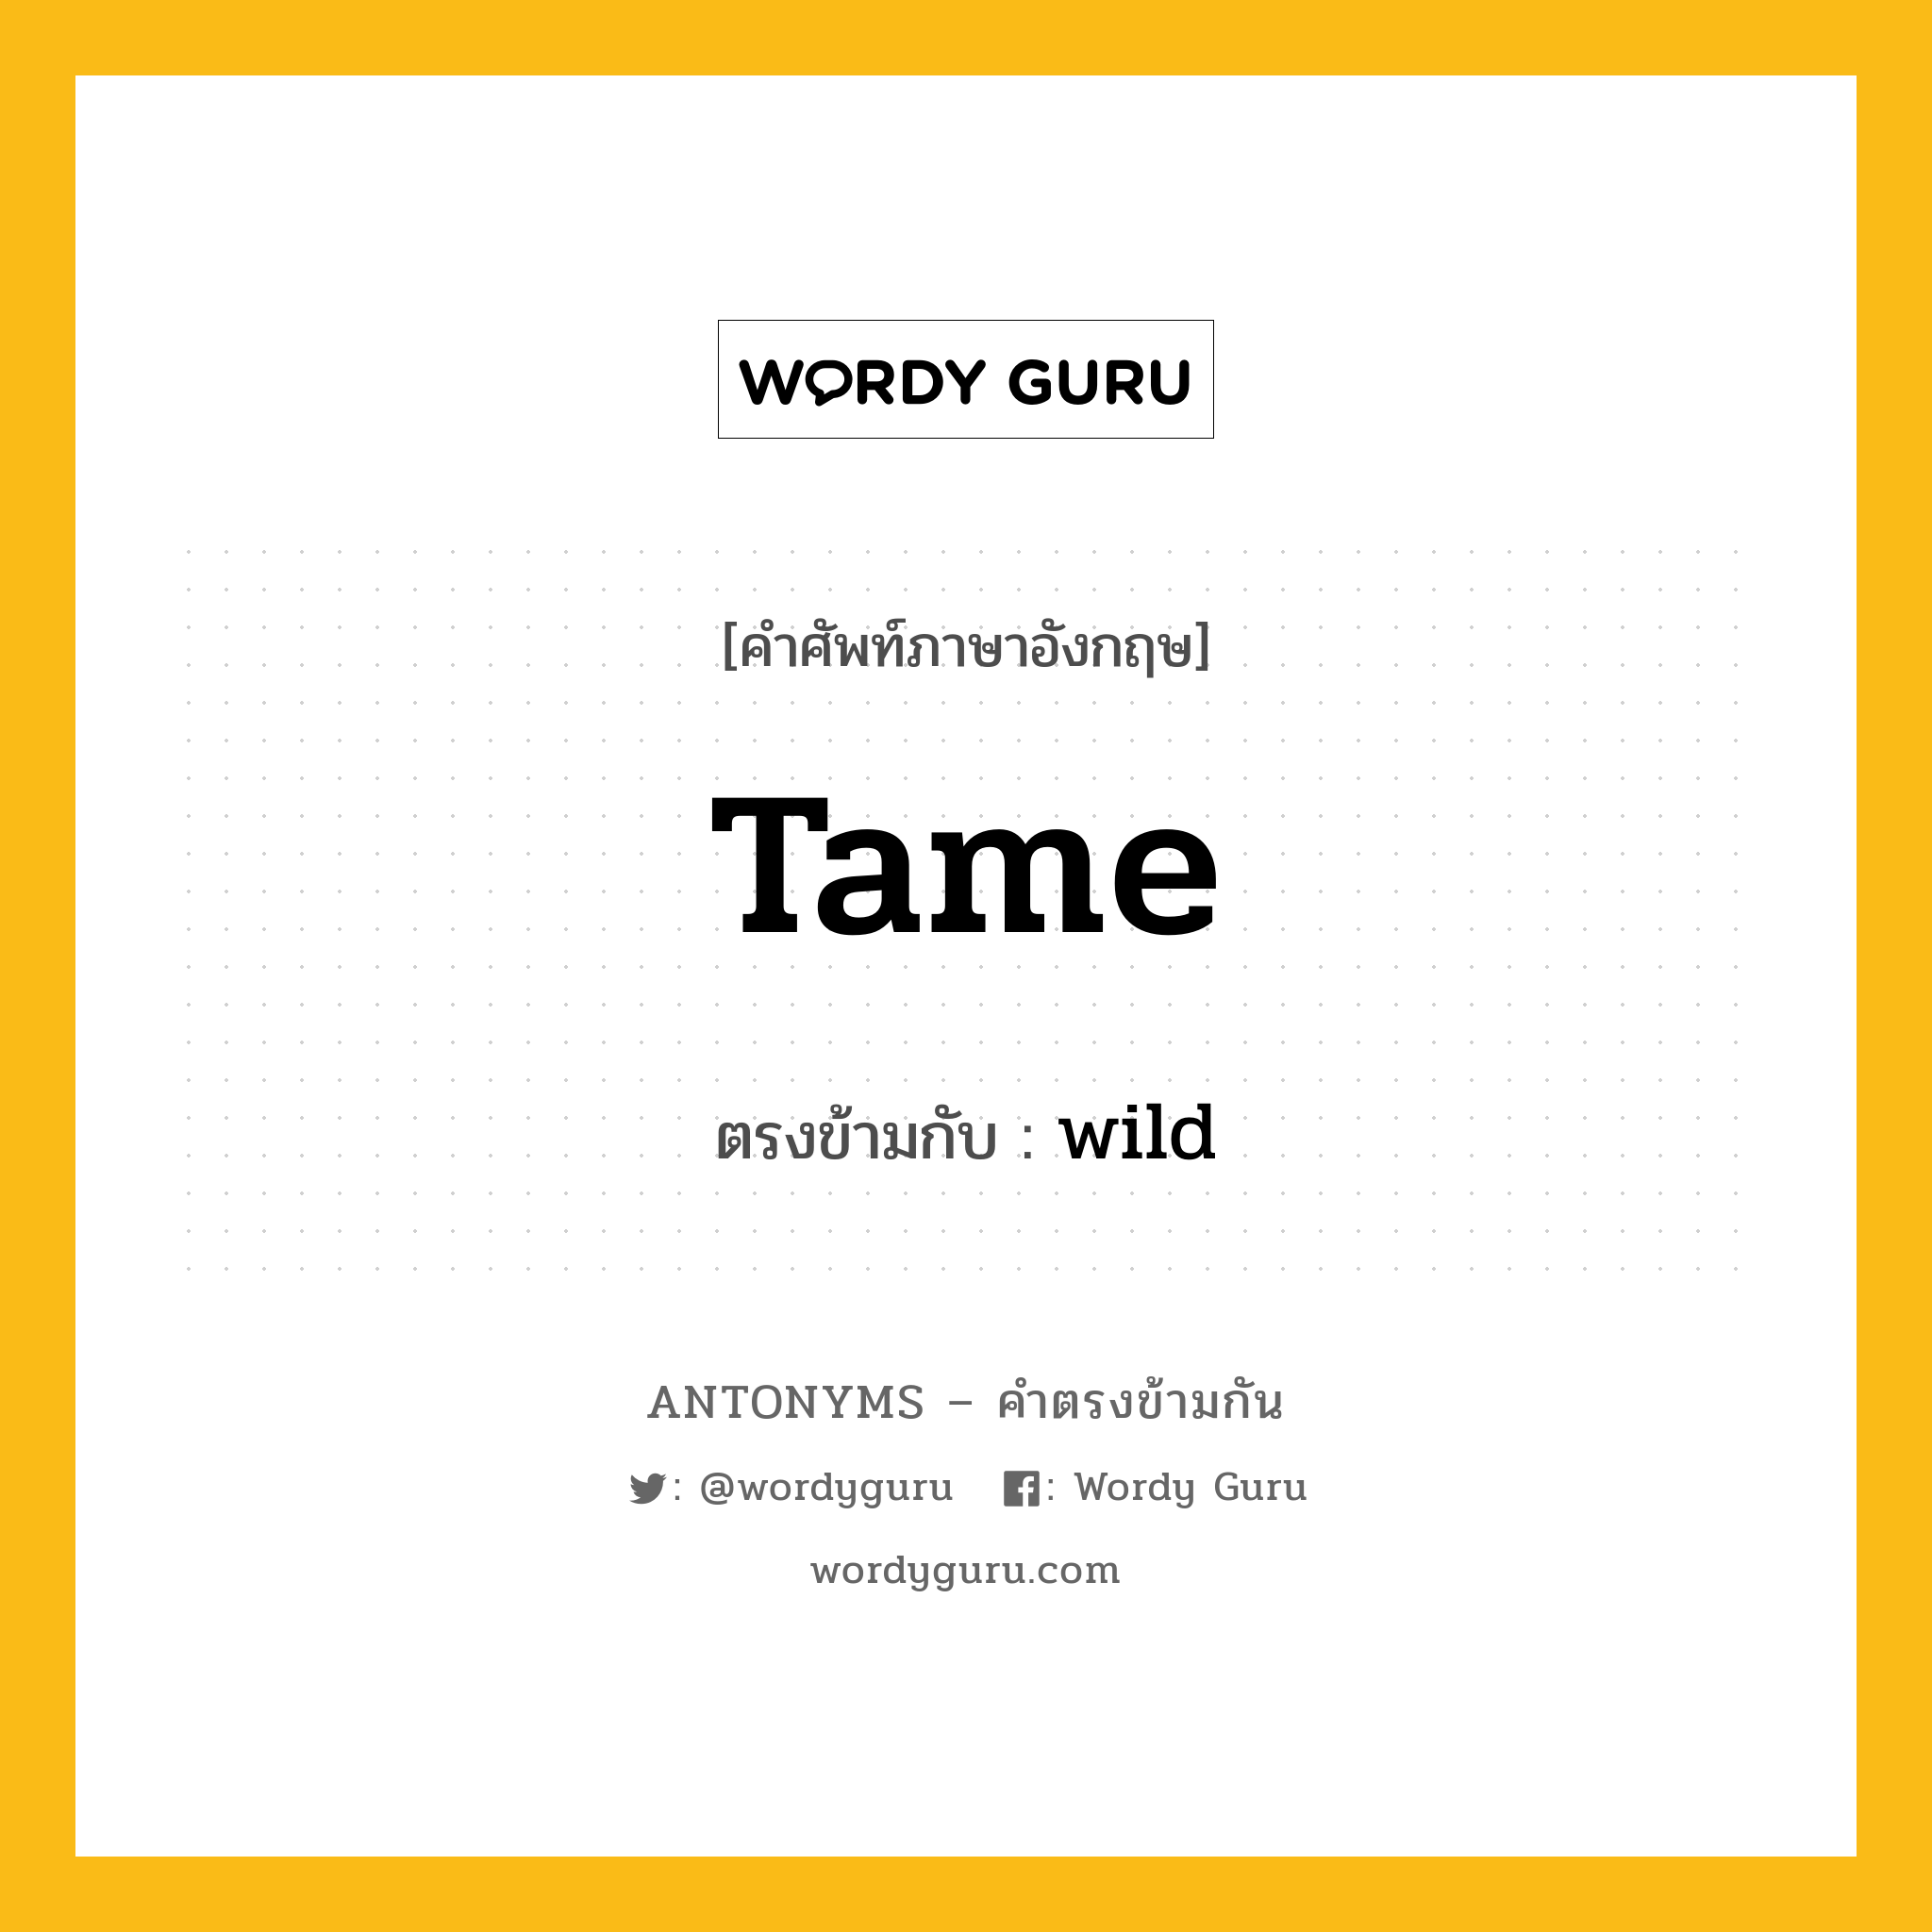 tame เป็นคำตรงข้ามกับคำไหนบ้าง?, คำศัพท์ภาษาอังกฤษ tame ตรงข้ามกับ wild หมวด wild